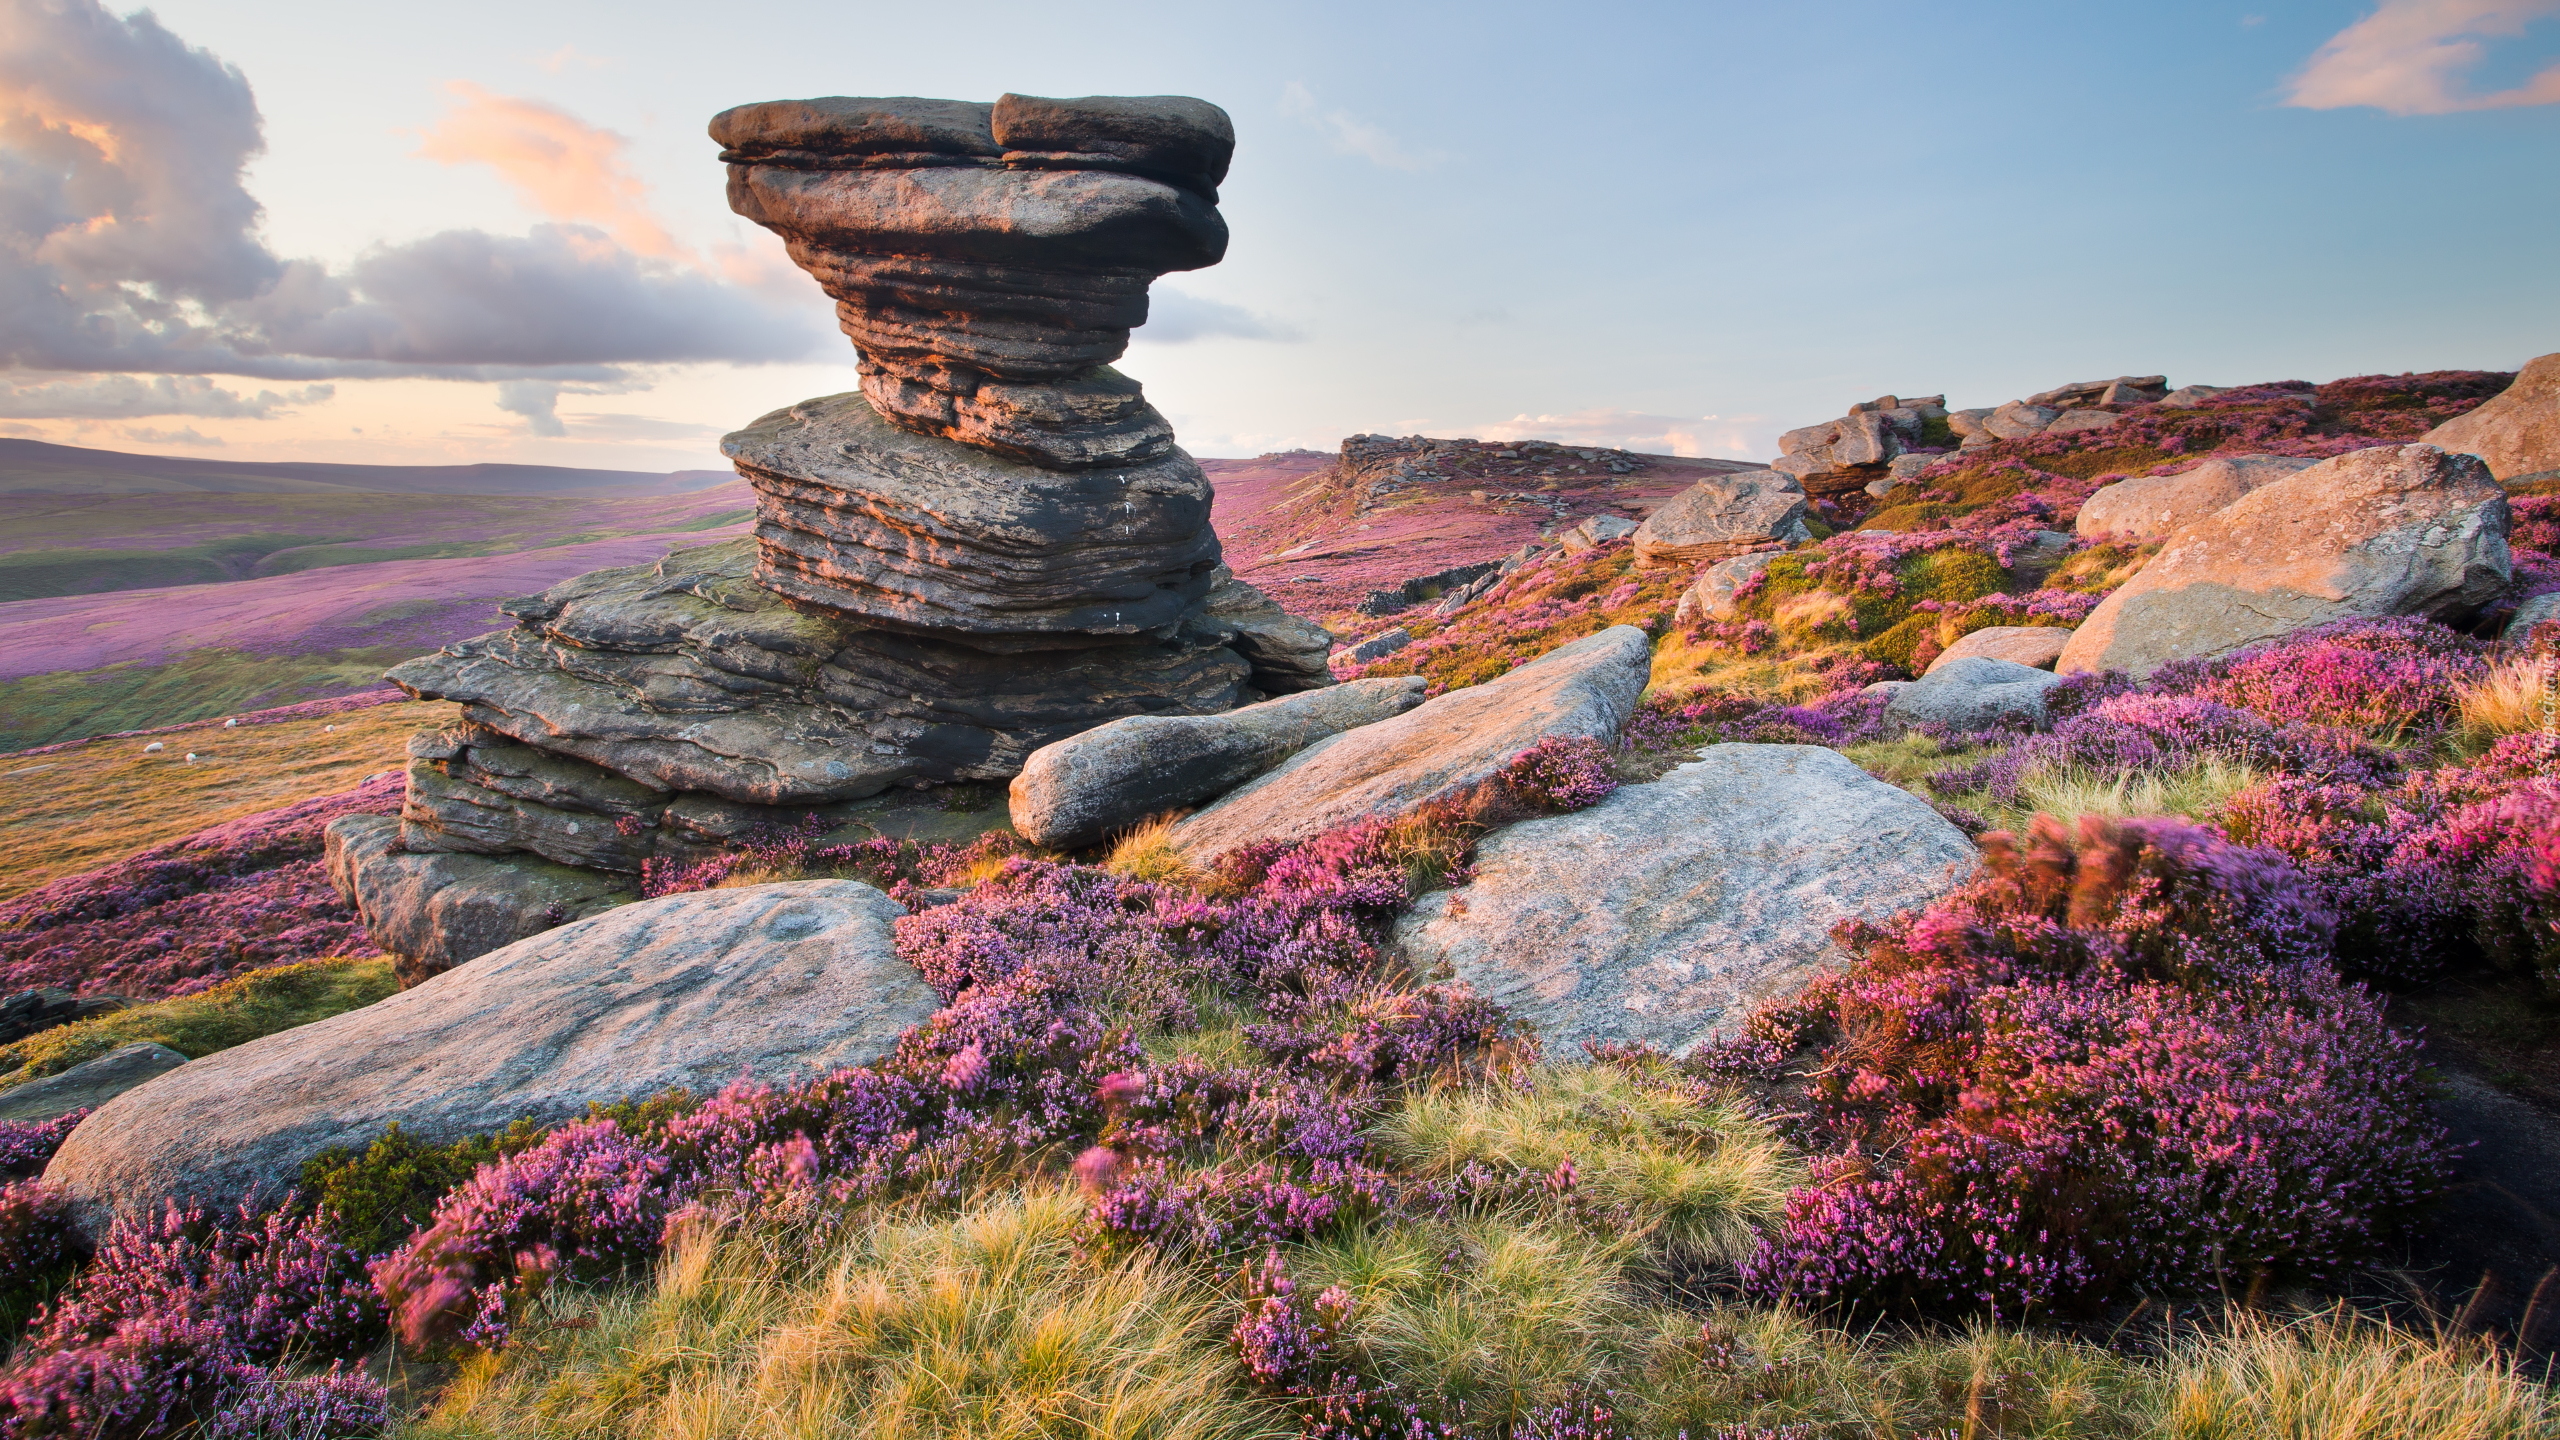 Wrzosowisko, Wzgórze, Skały, Kamienie, Park Narodowy Peak District, Formacja skalna Salt Cellar, Hrabstwo Derbyshire, Anglia